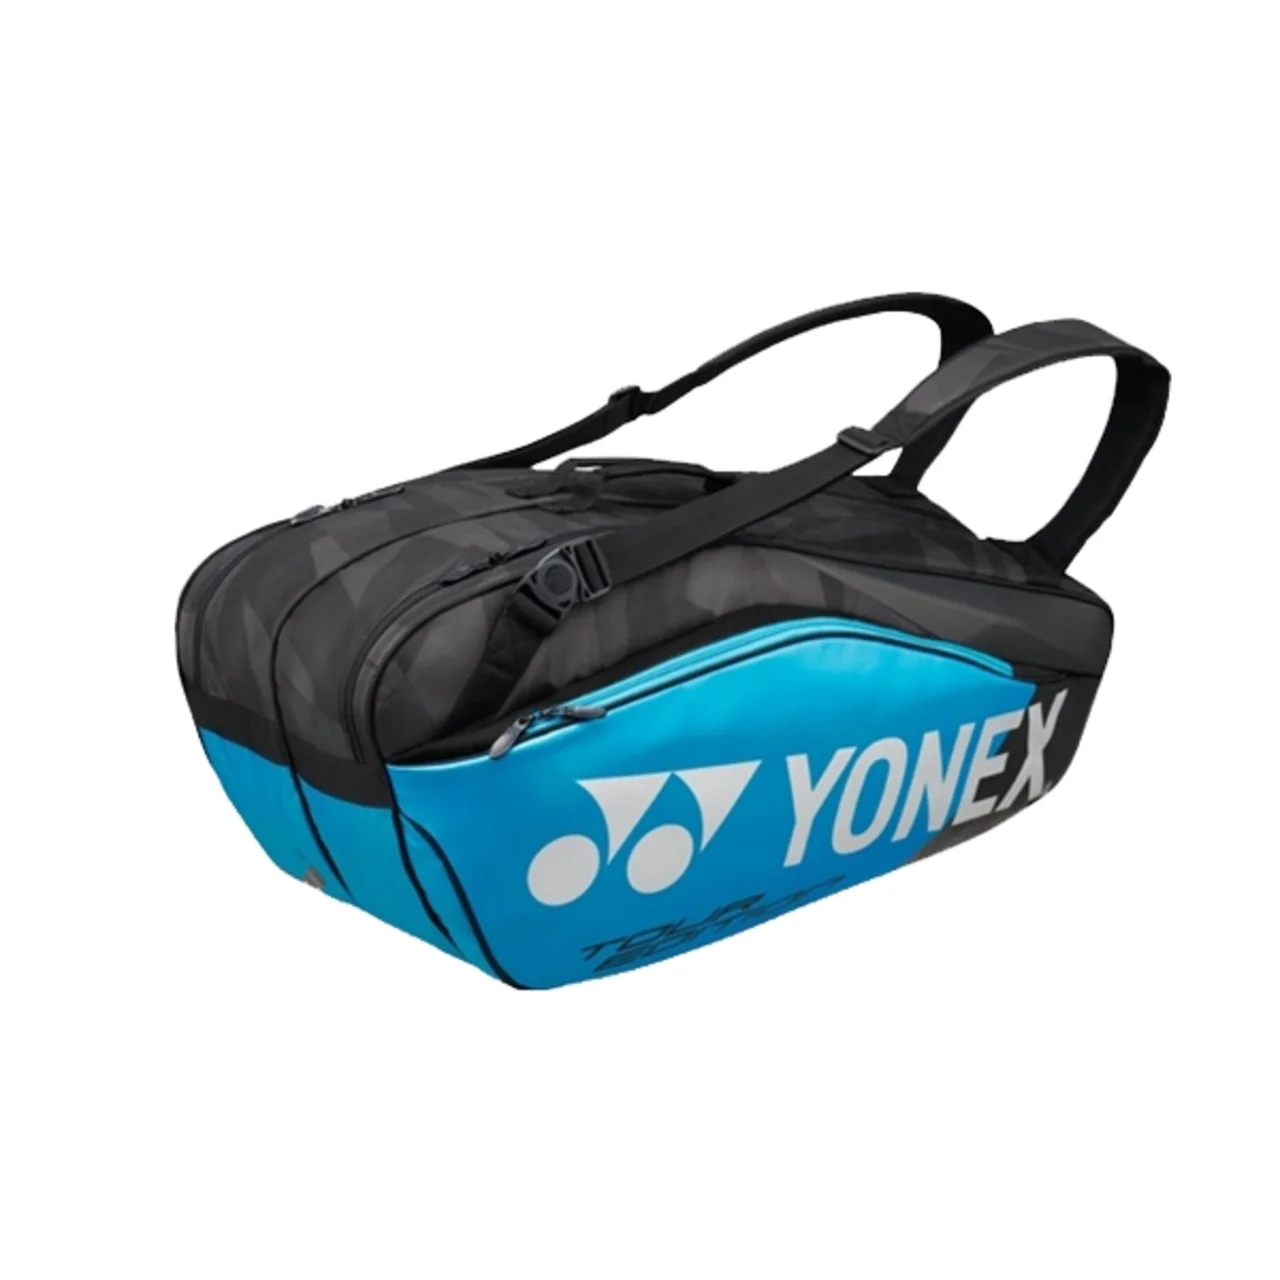 Yonex Pro Bag x6 Infinity Blue